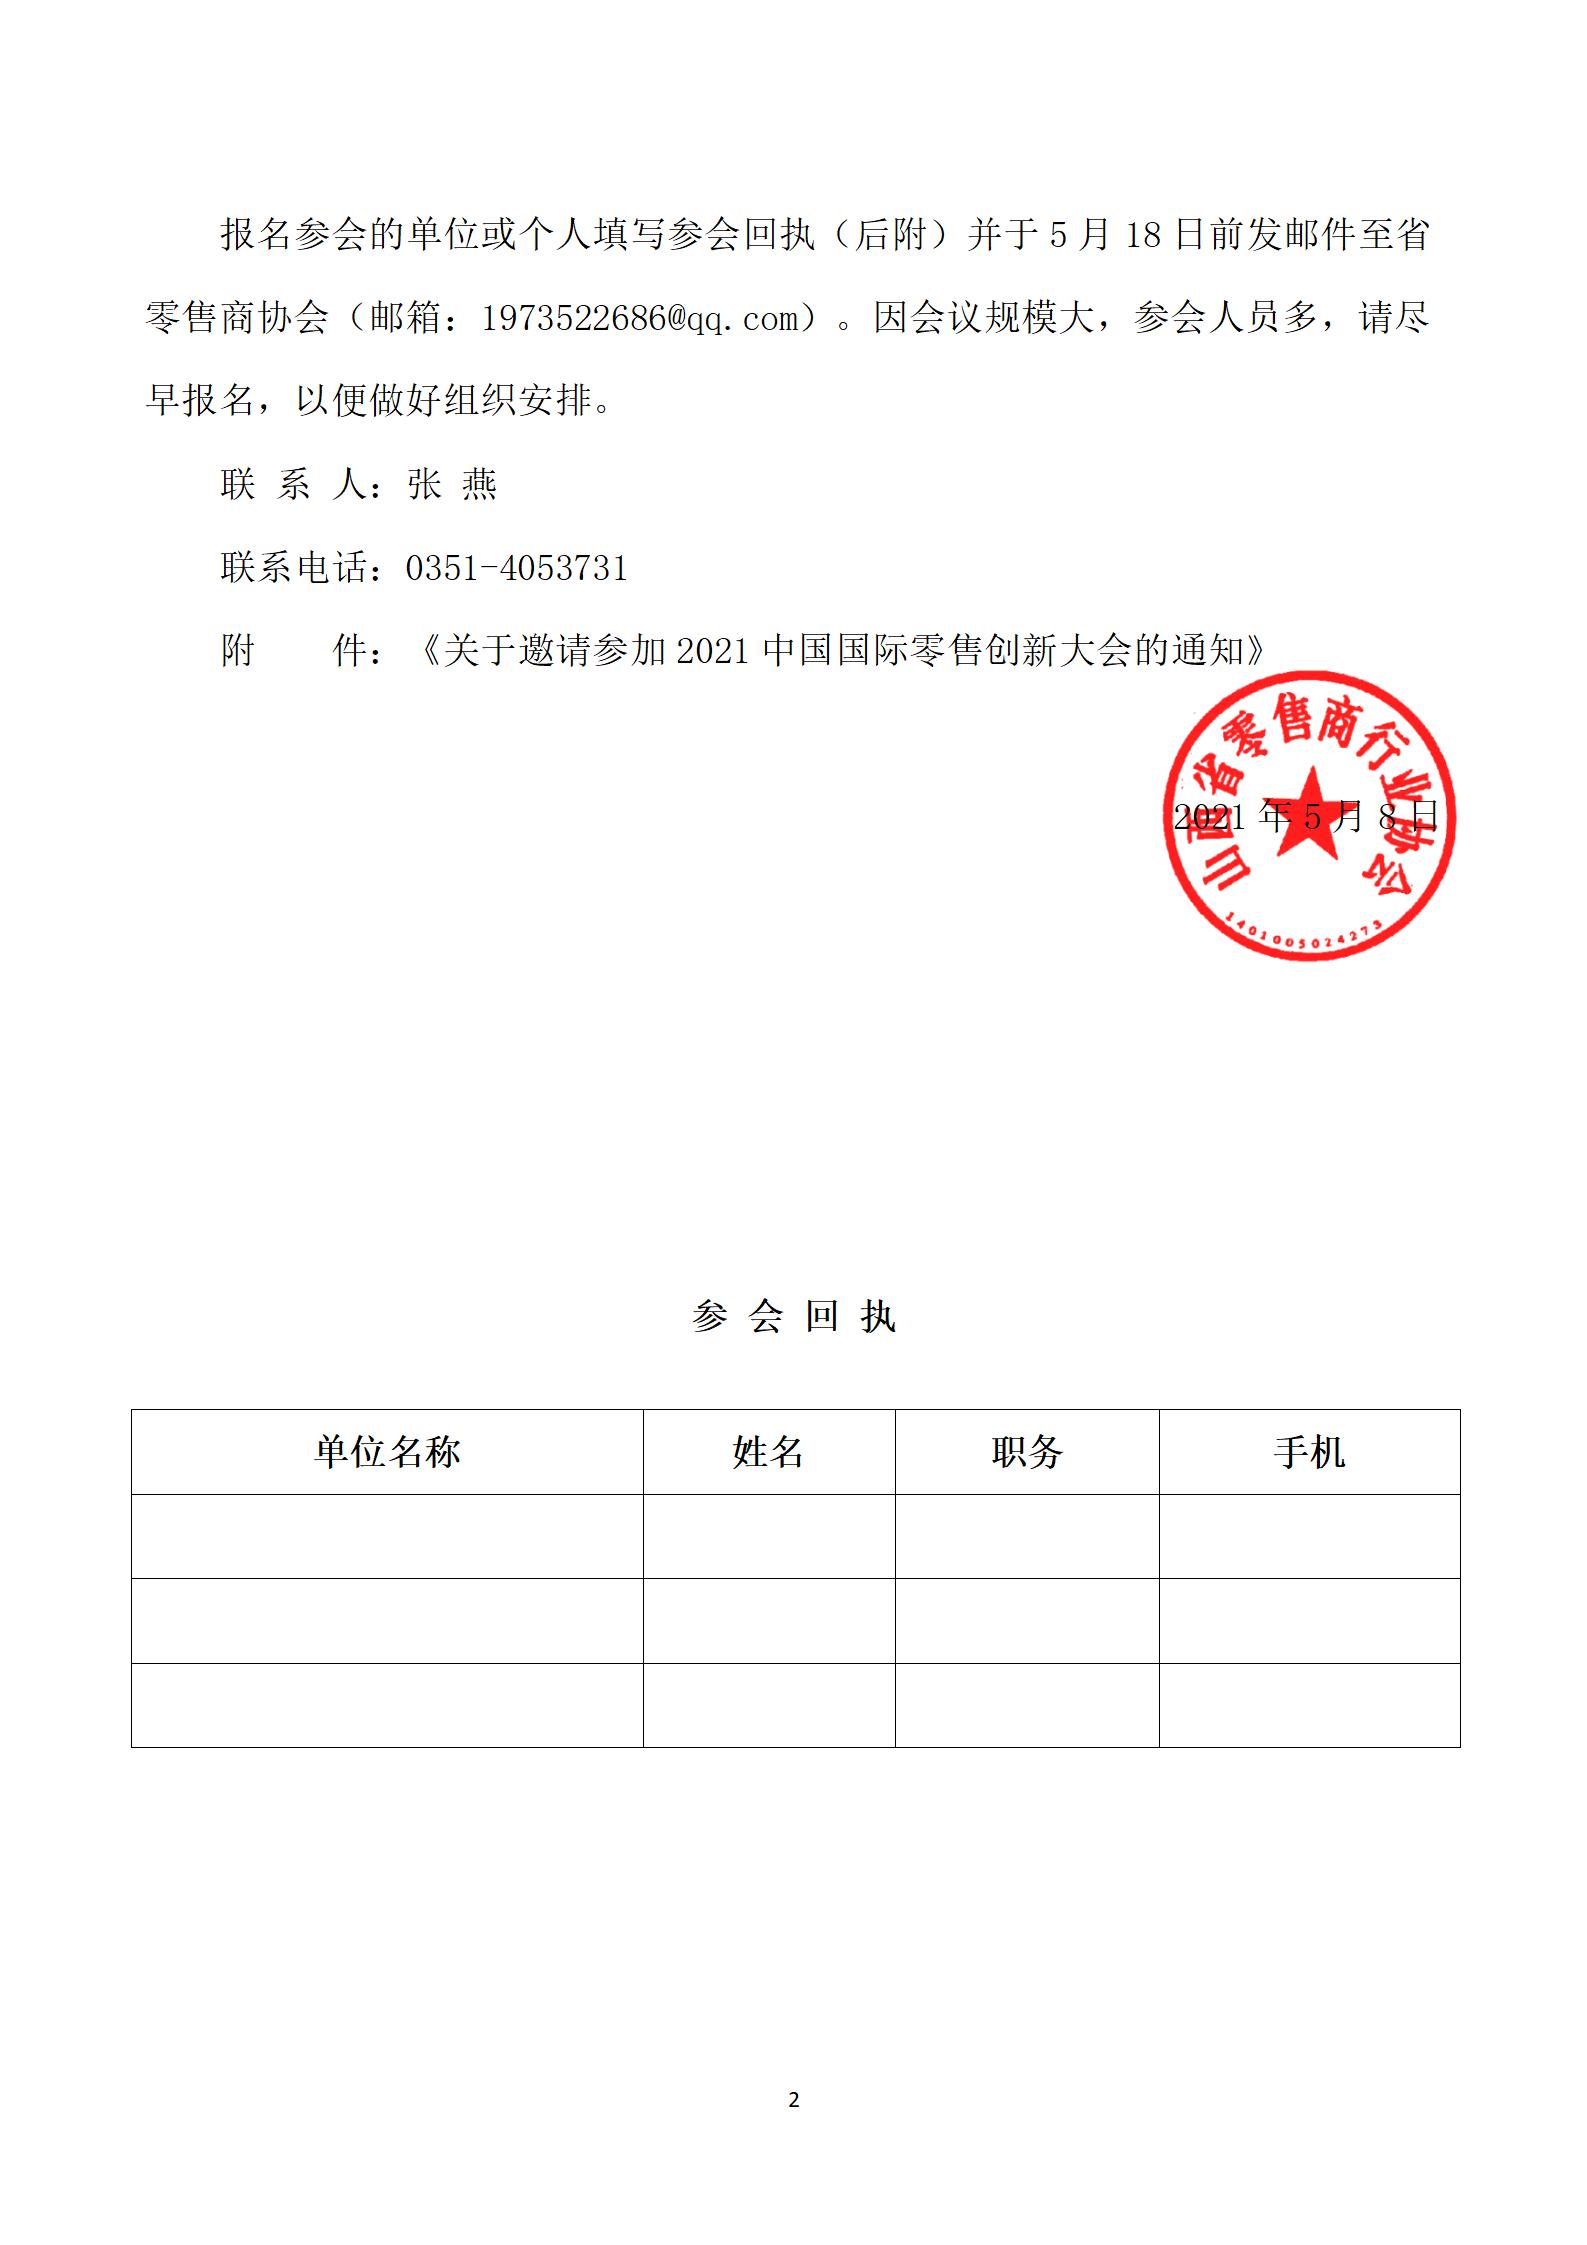 转发《关于邀请参加2021中国国际零售创新大会的通知》的函(图2)